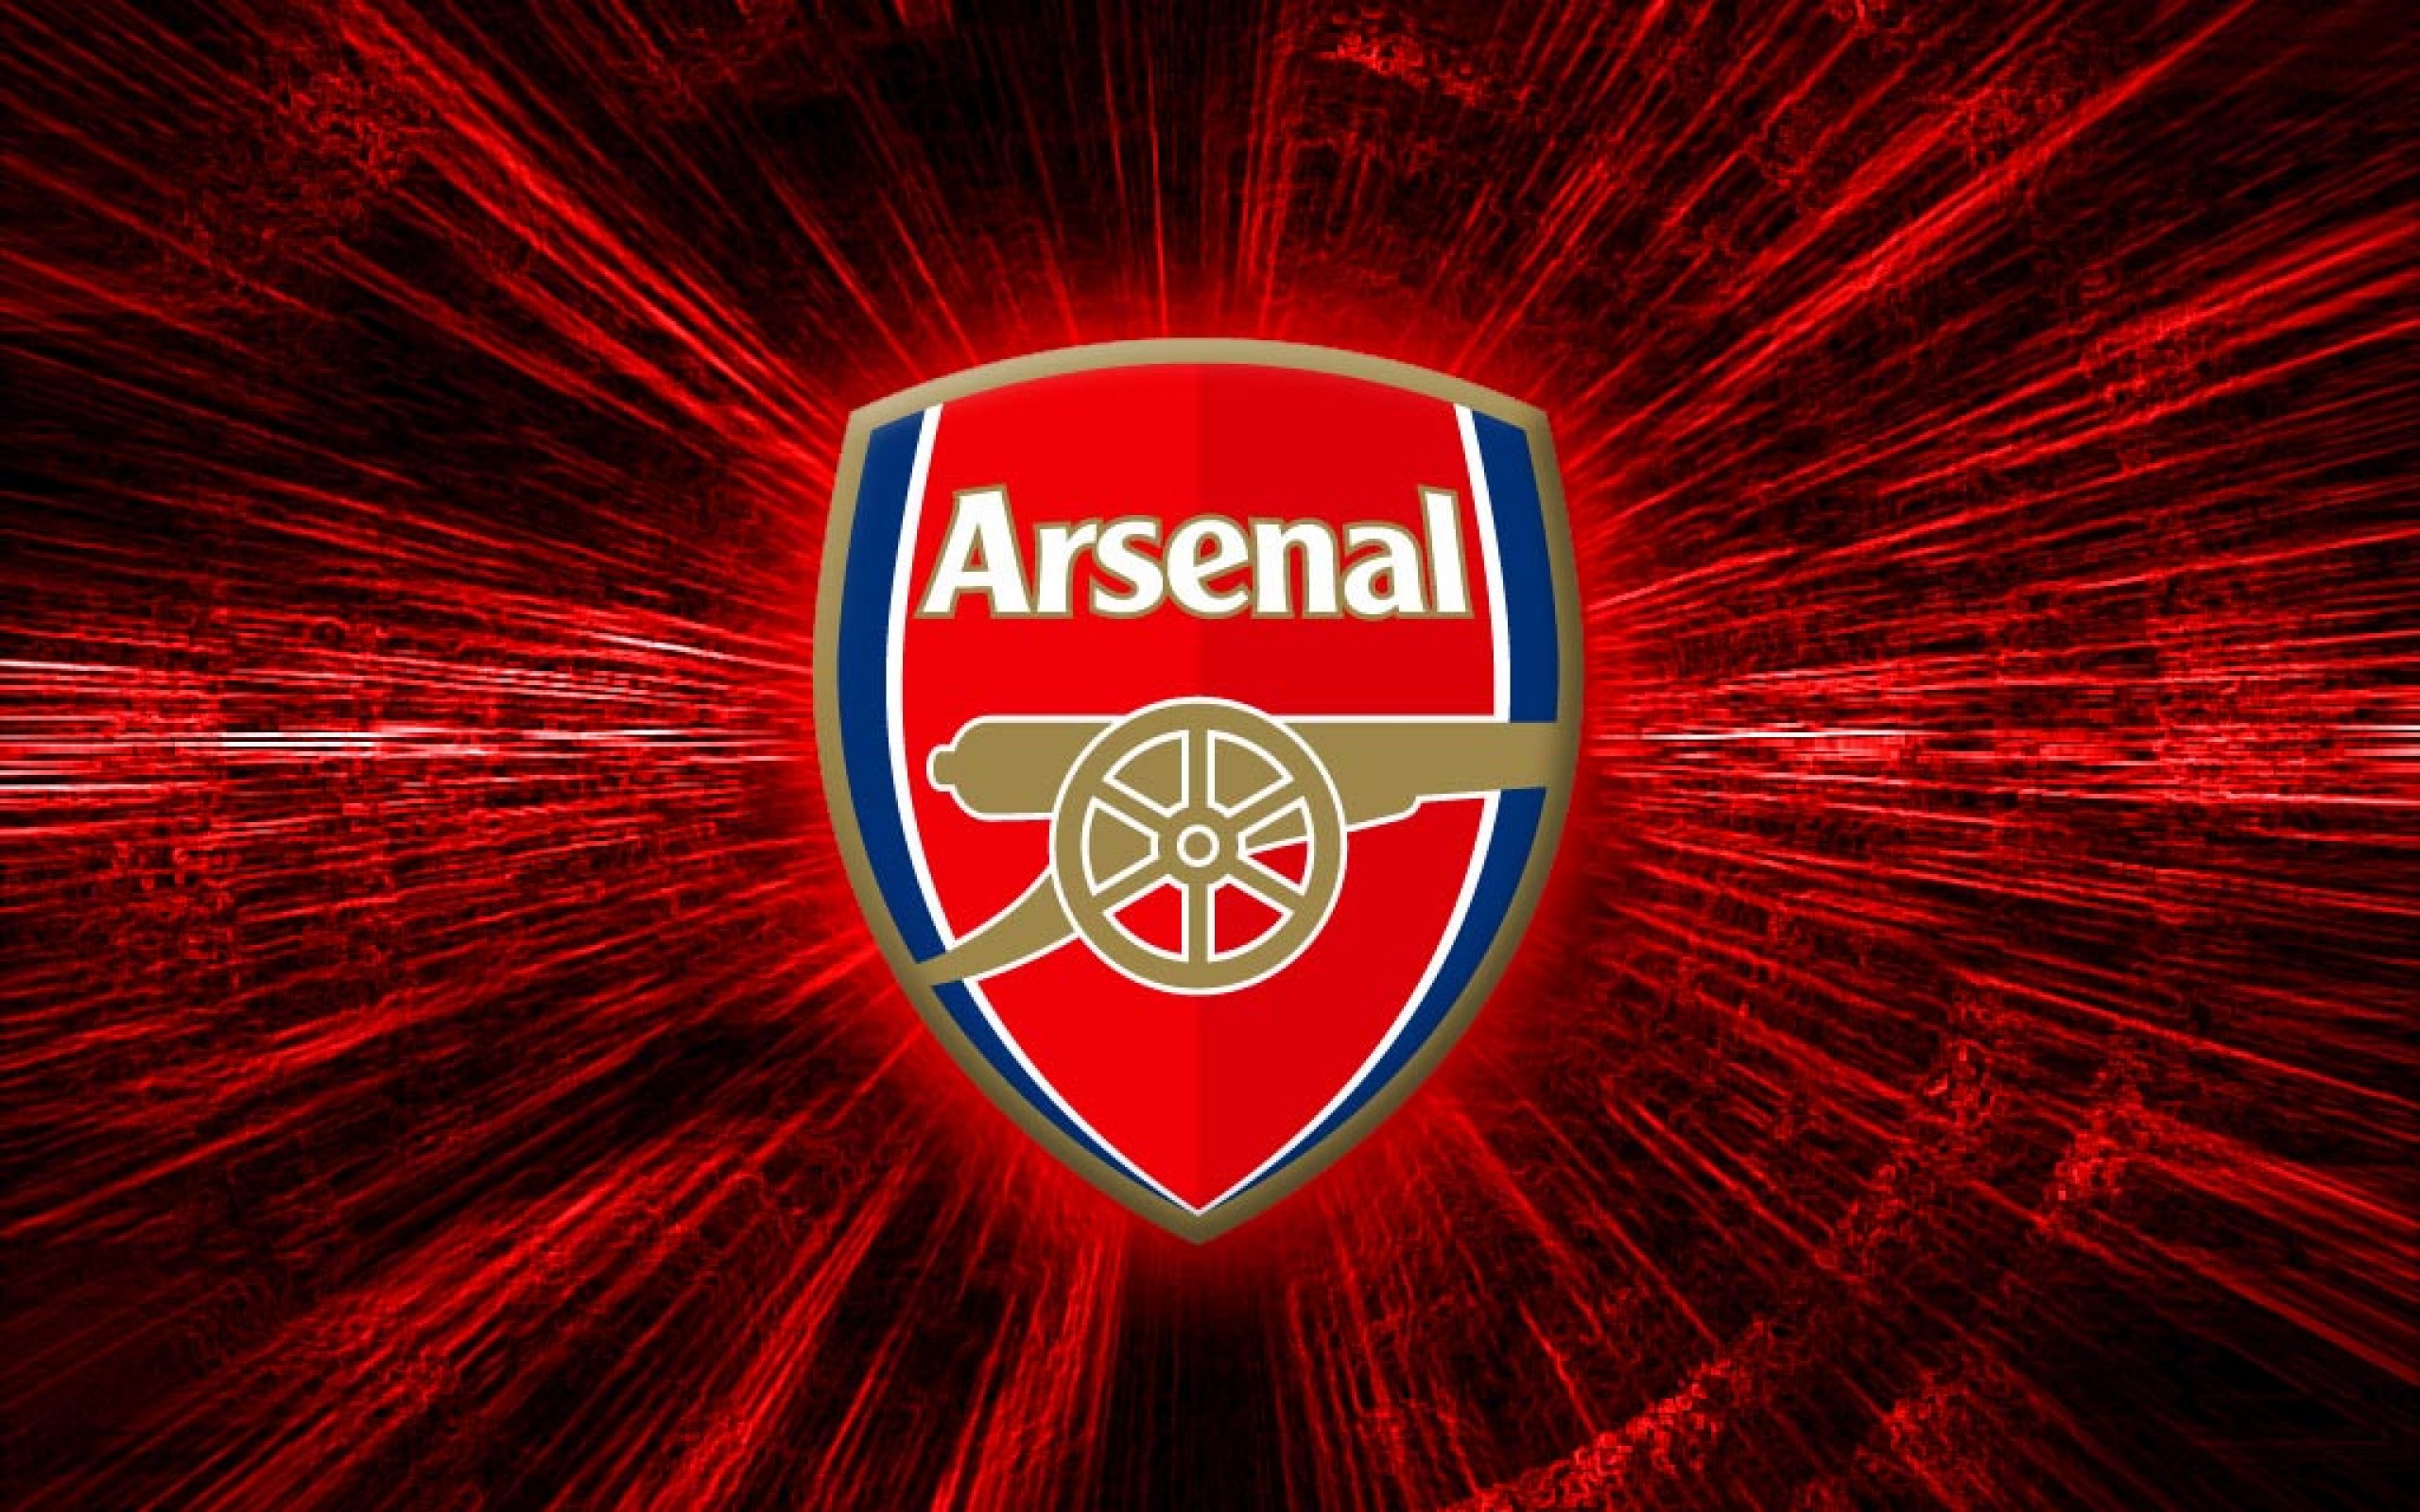  Arsenal desktop image Arsenal FC wallpapers 2560x1600